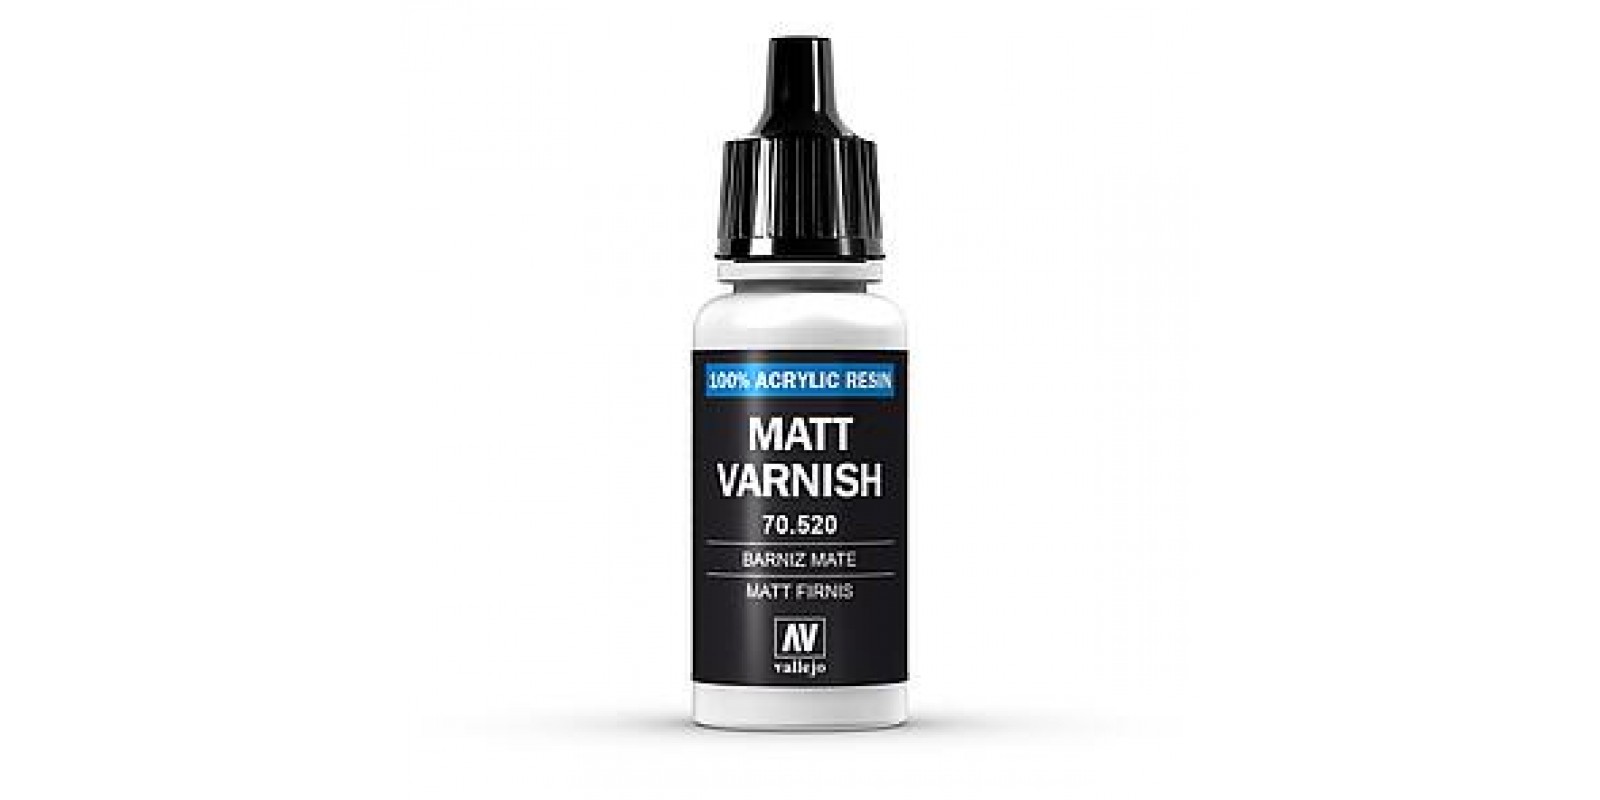 FA770520 Matt Varnish